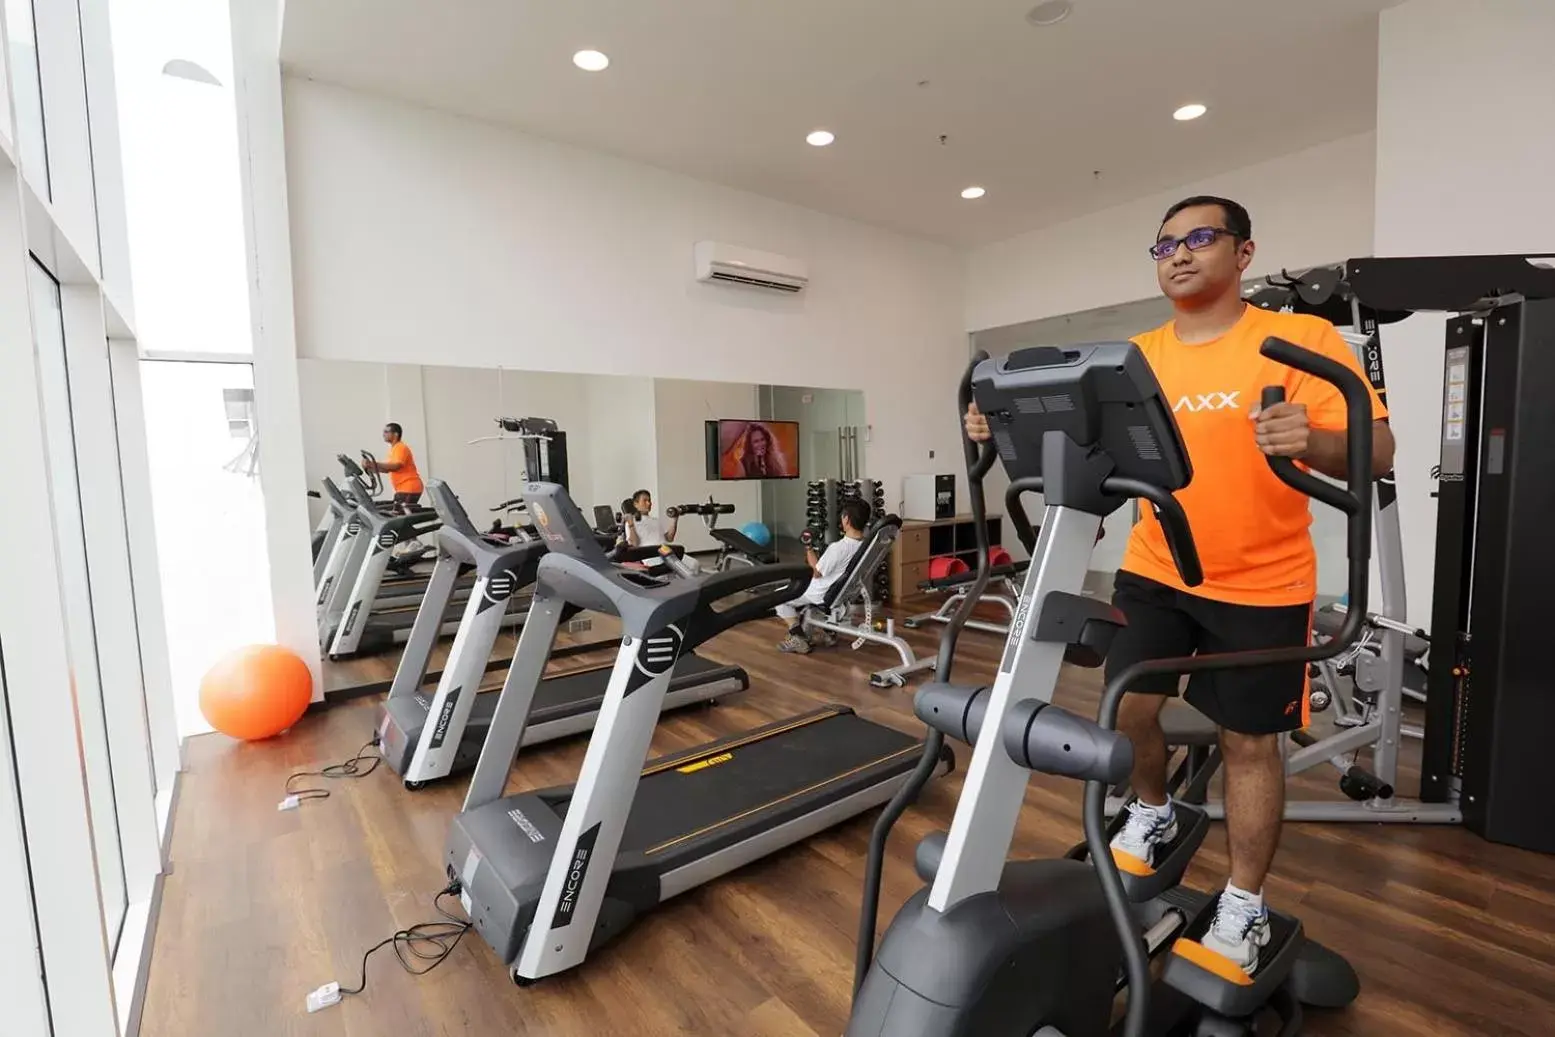 Fitness centre/facilities, Fitness Center/Facilities in Amerin Hotel Johor Bahru